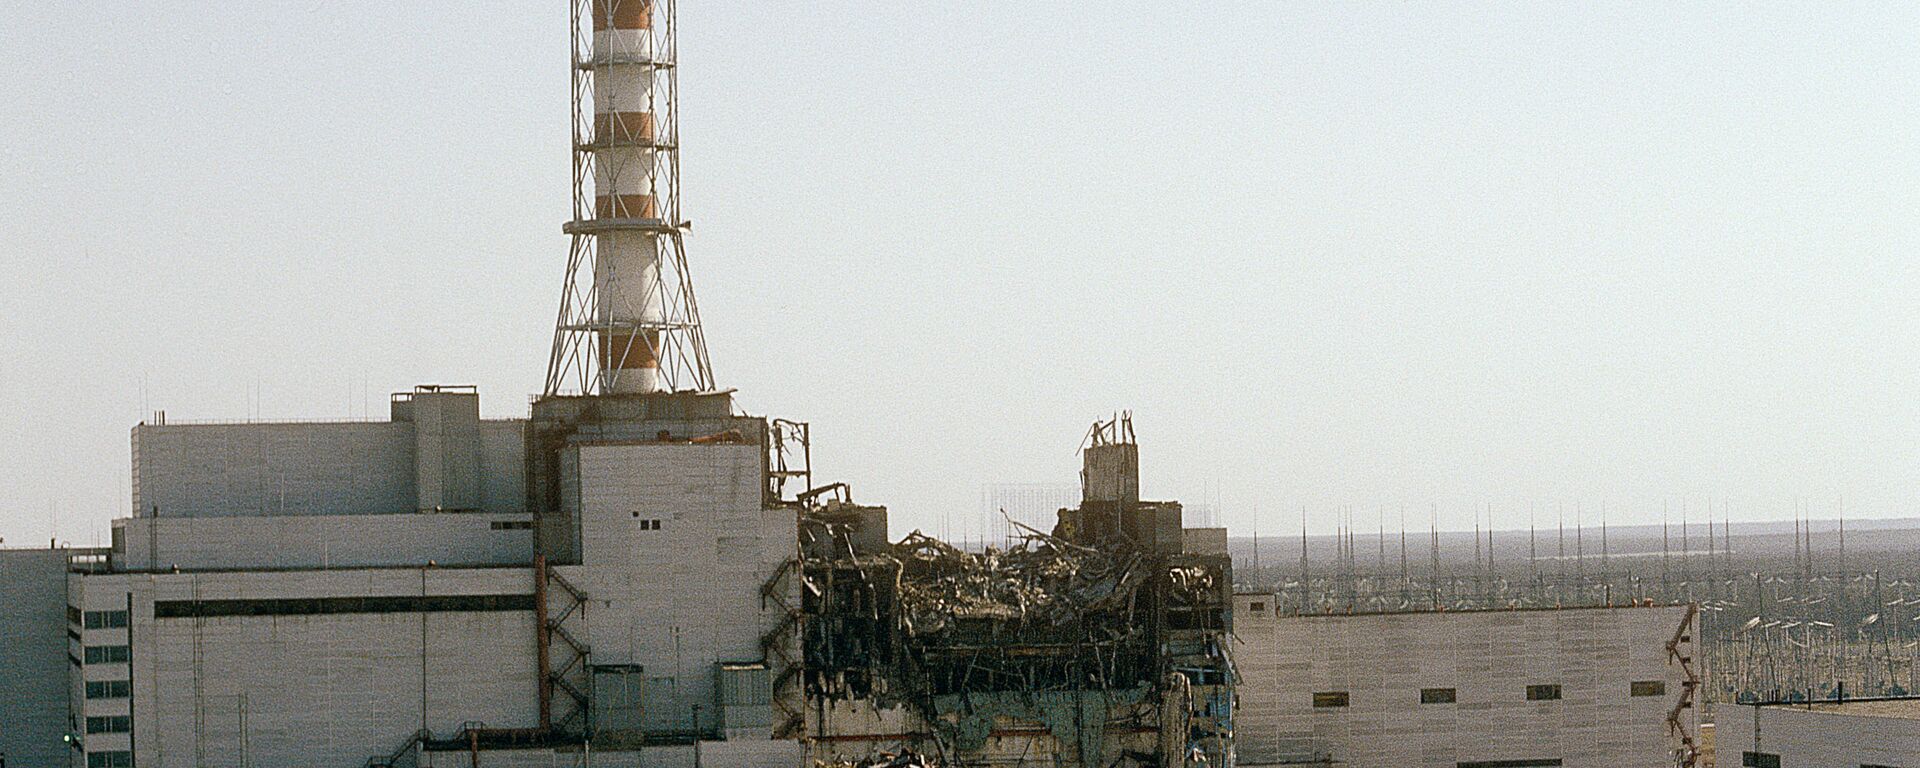  Quang cảnh nhà máy điện hạt nhân Chernobyl từ phía lò phản ứng thứ tư, năm 1986. - Sputnik Việt Nam, 1920, 26.04.2021